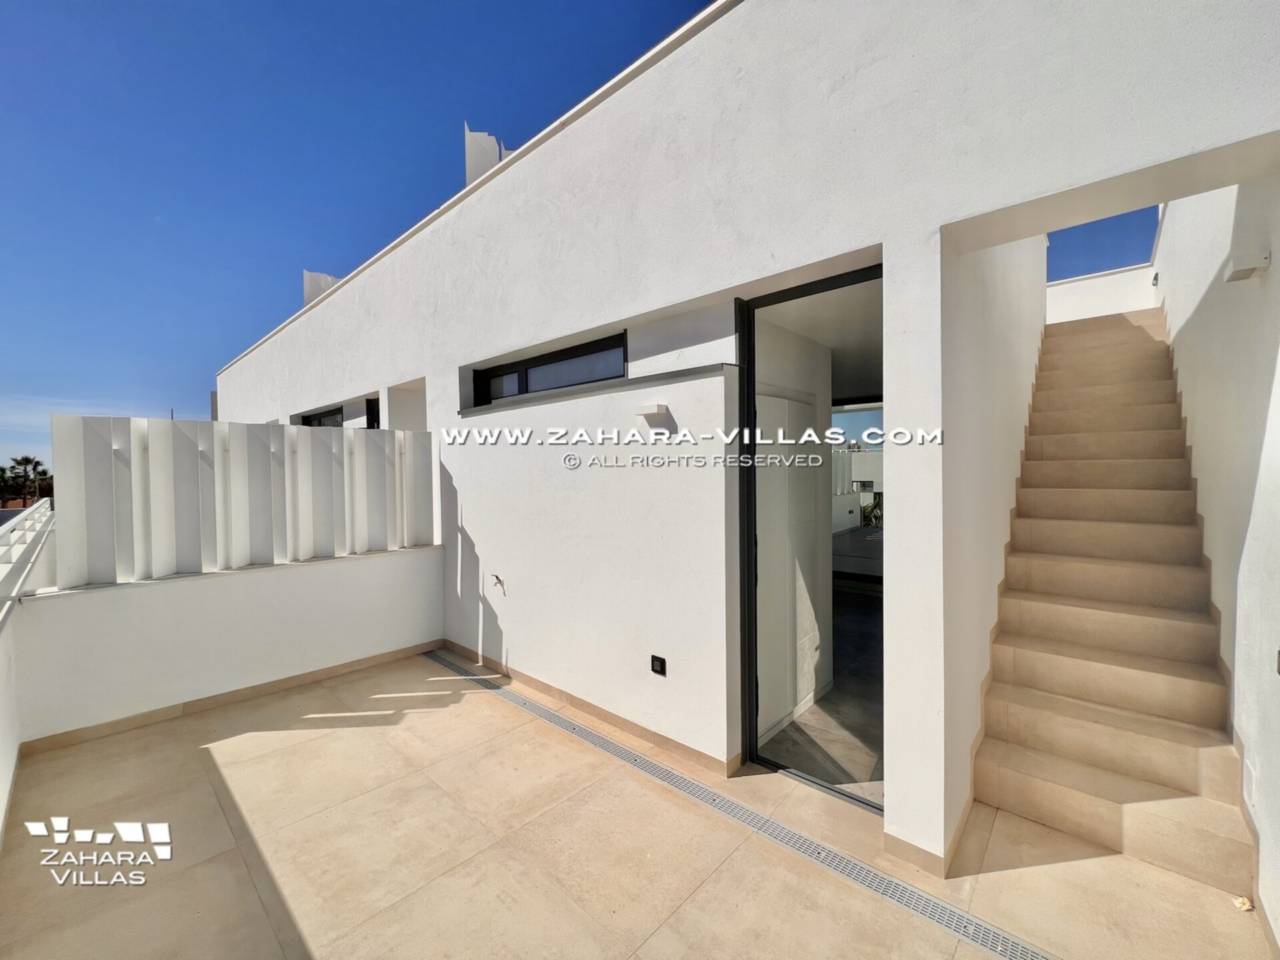 Imagen 36 de  Promoción obra nueva terminada "EL OASIS DE ZAHARA" viviendas adosadas junto al mar